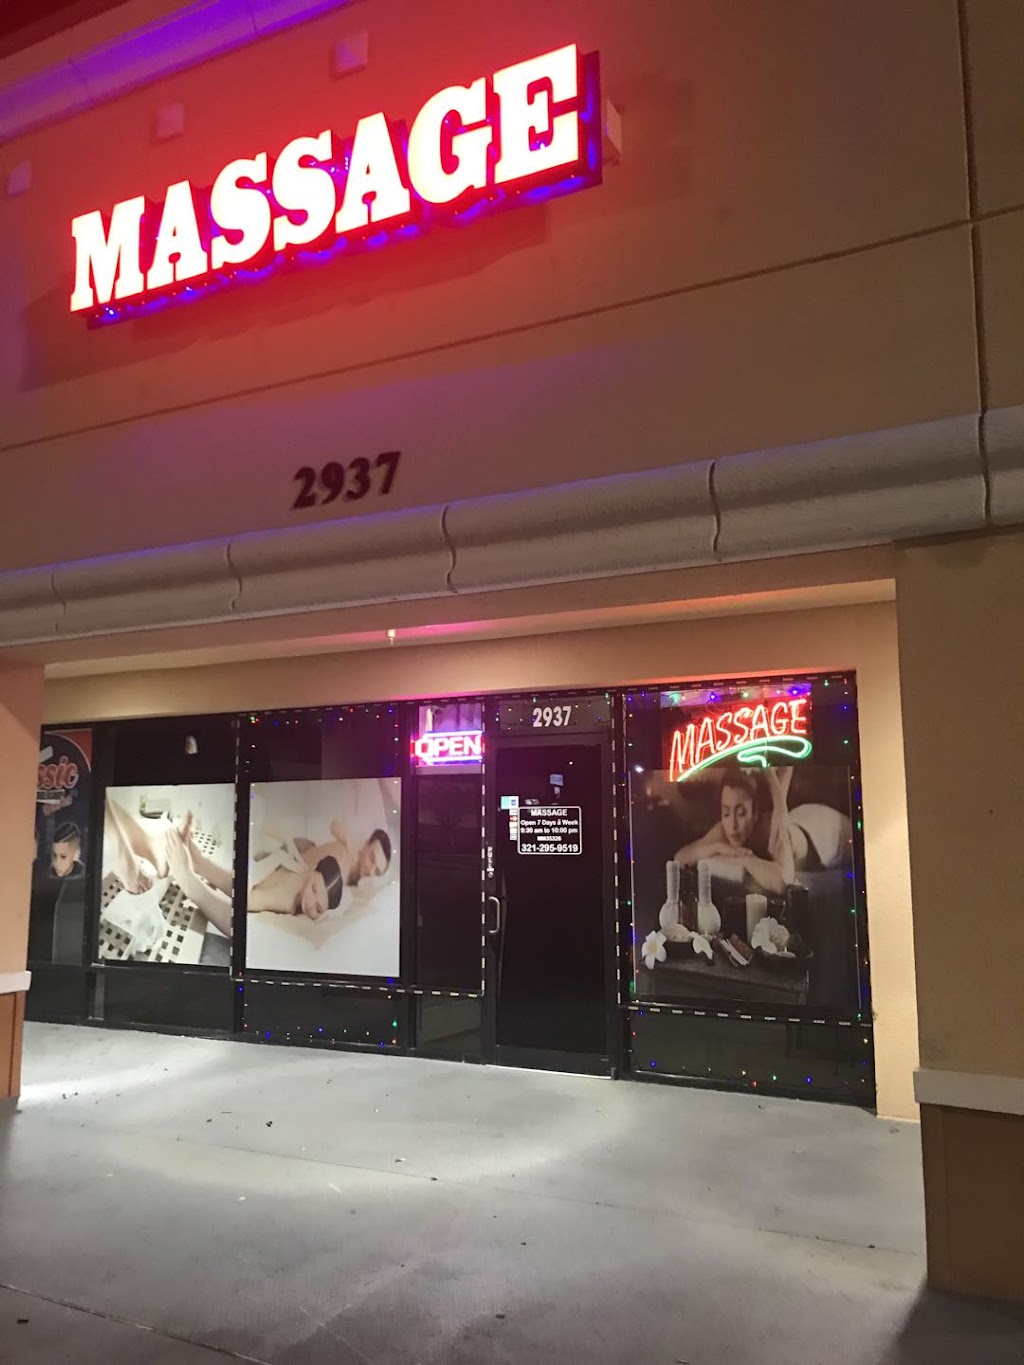 Best Massage Kissimmee | 2937 Vineland Rd, Kissimmee, FL 34746, USA | Phone: (321) 295-9519